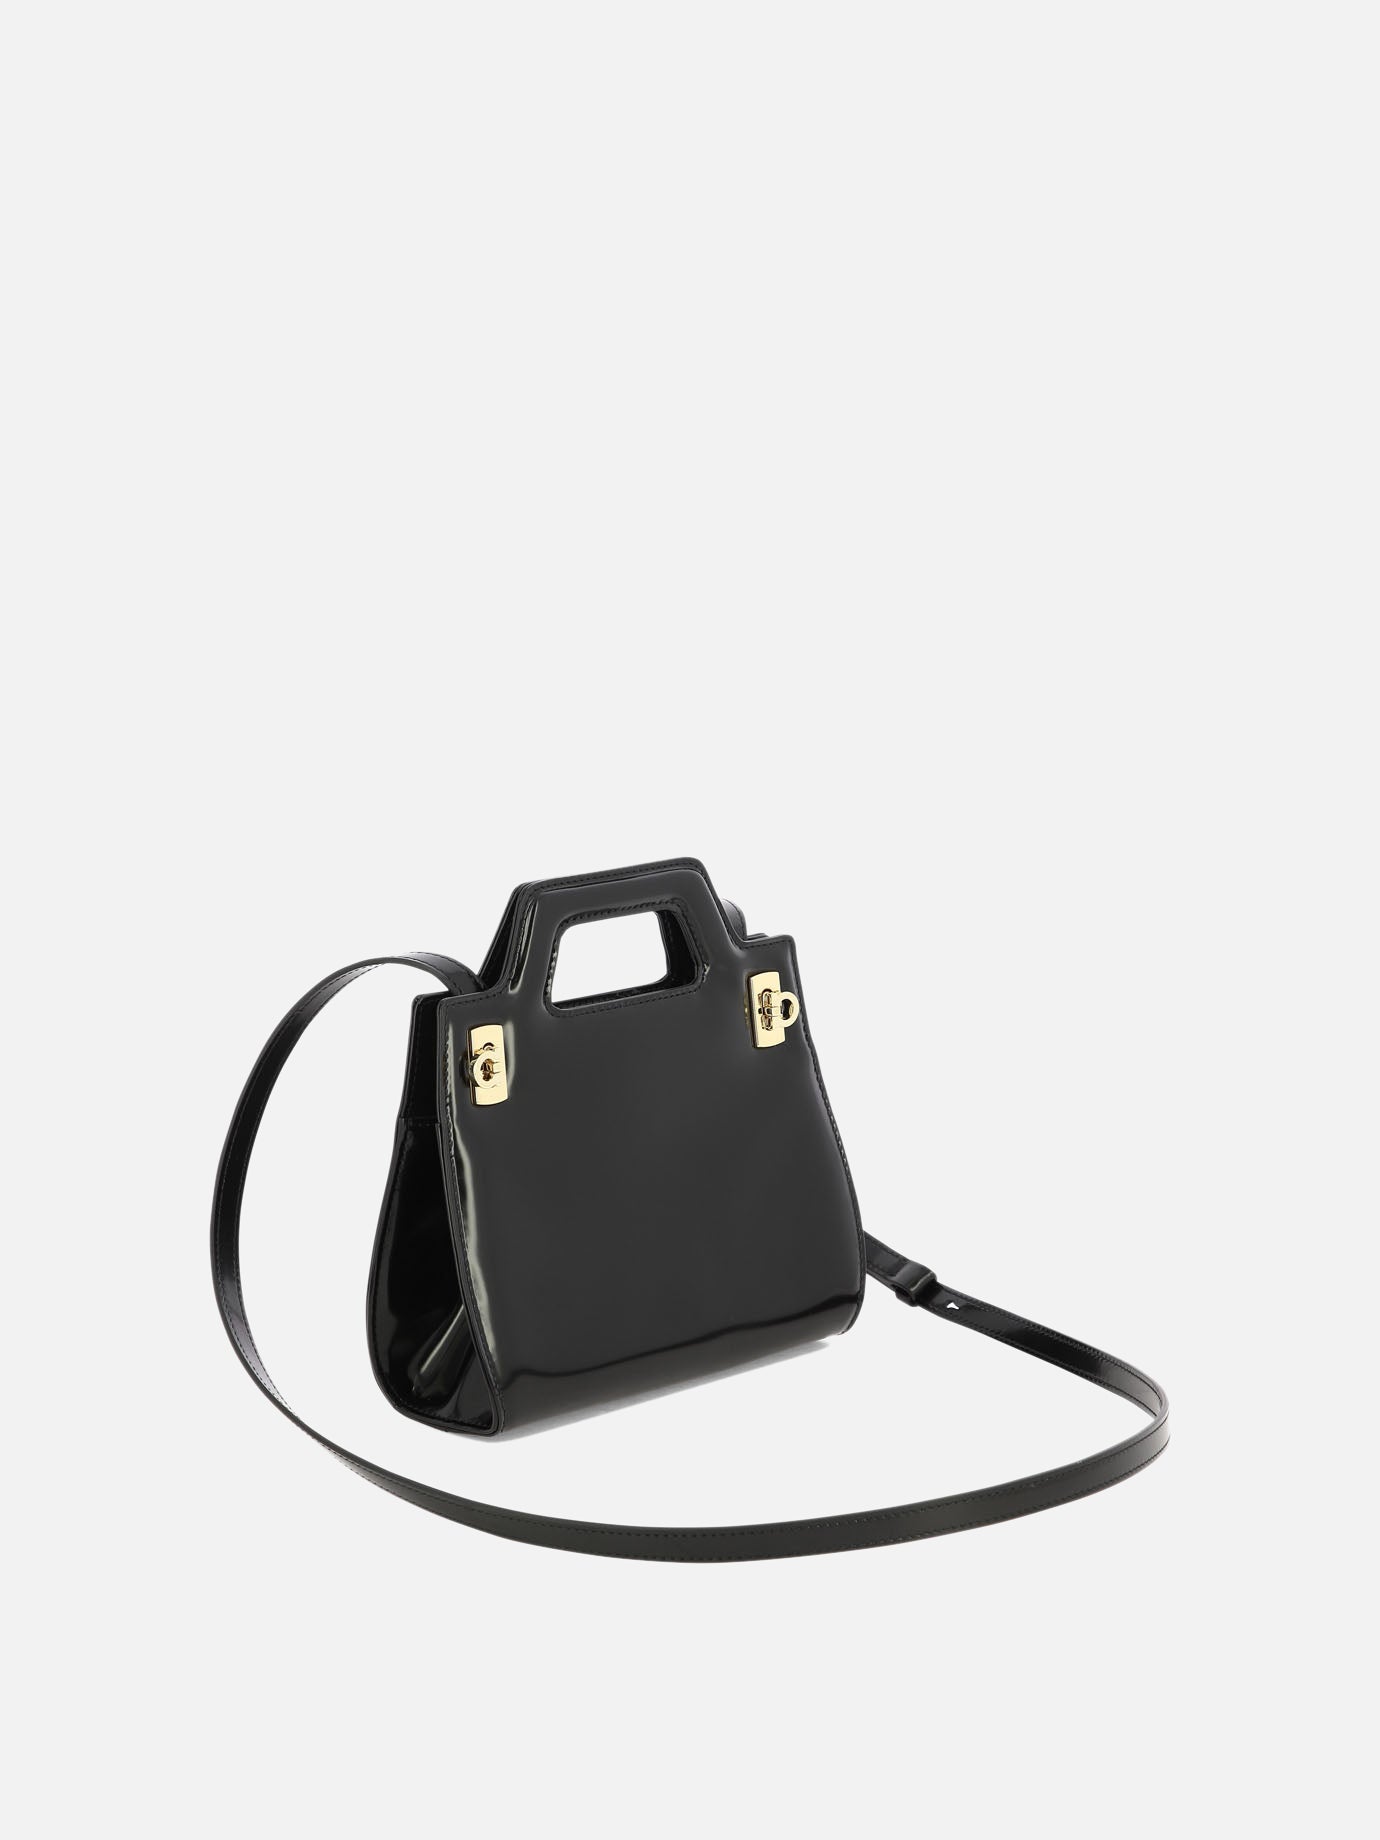 "Wanda Mini" handbag